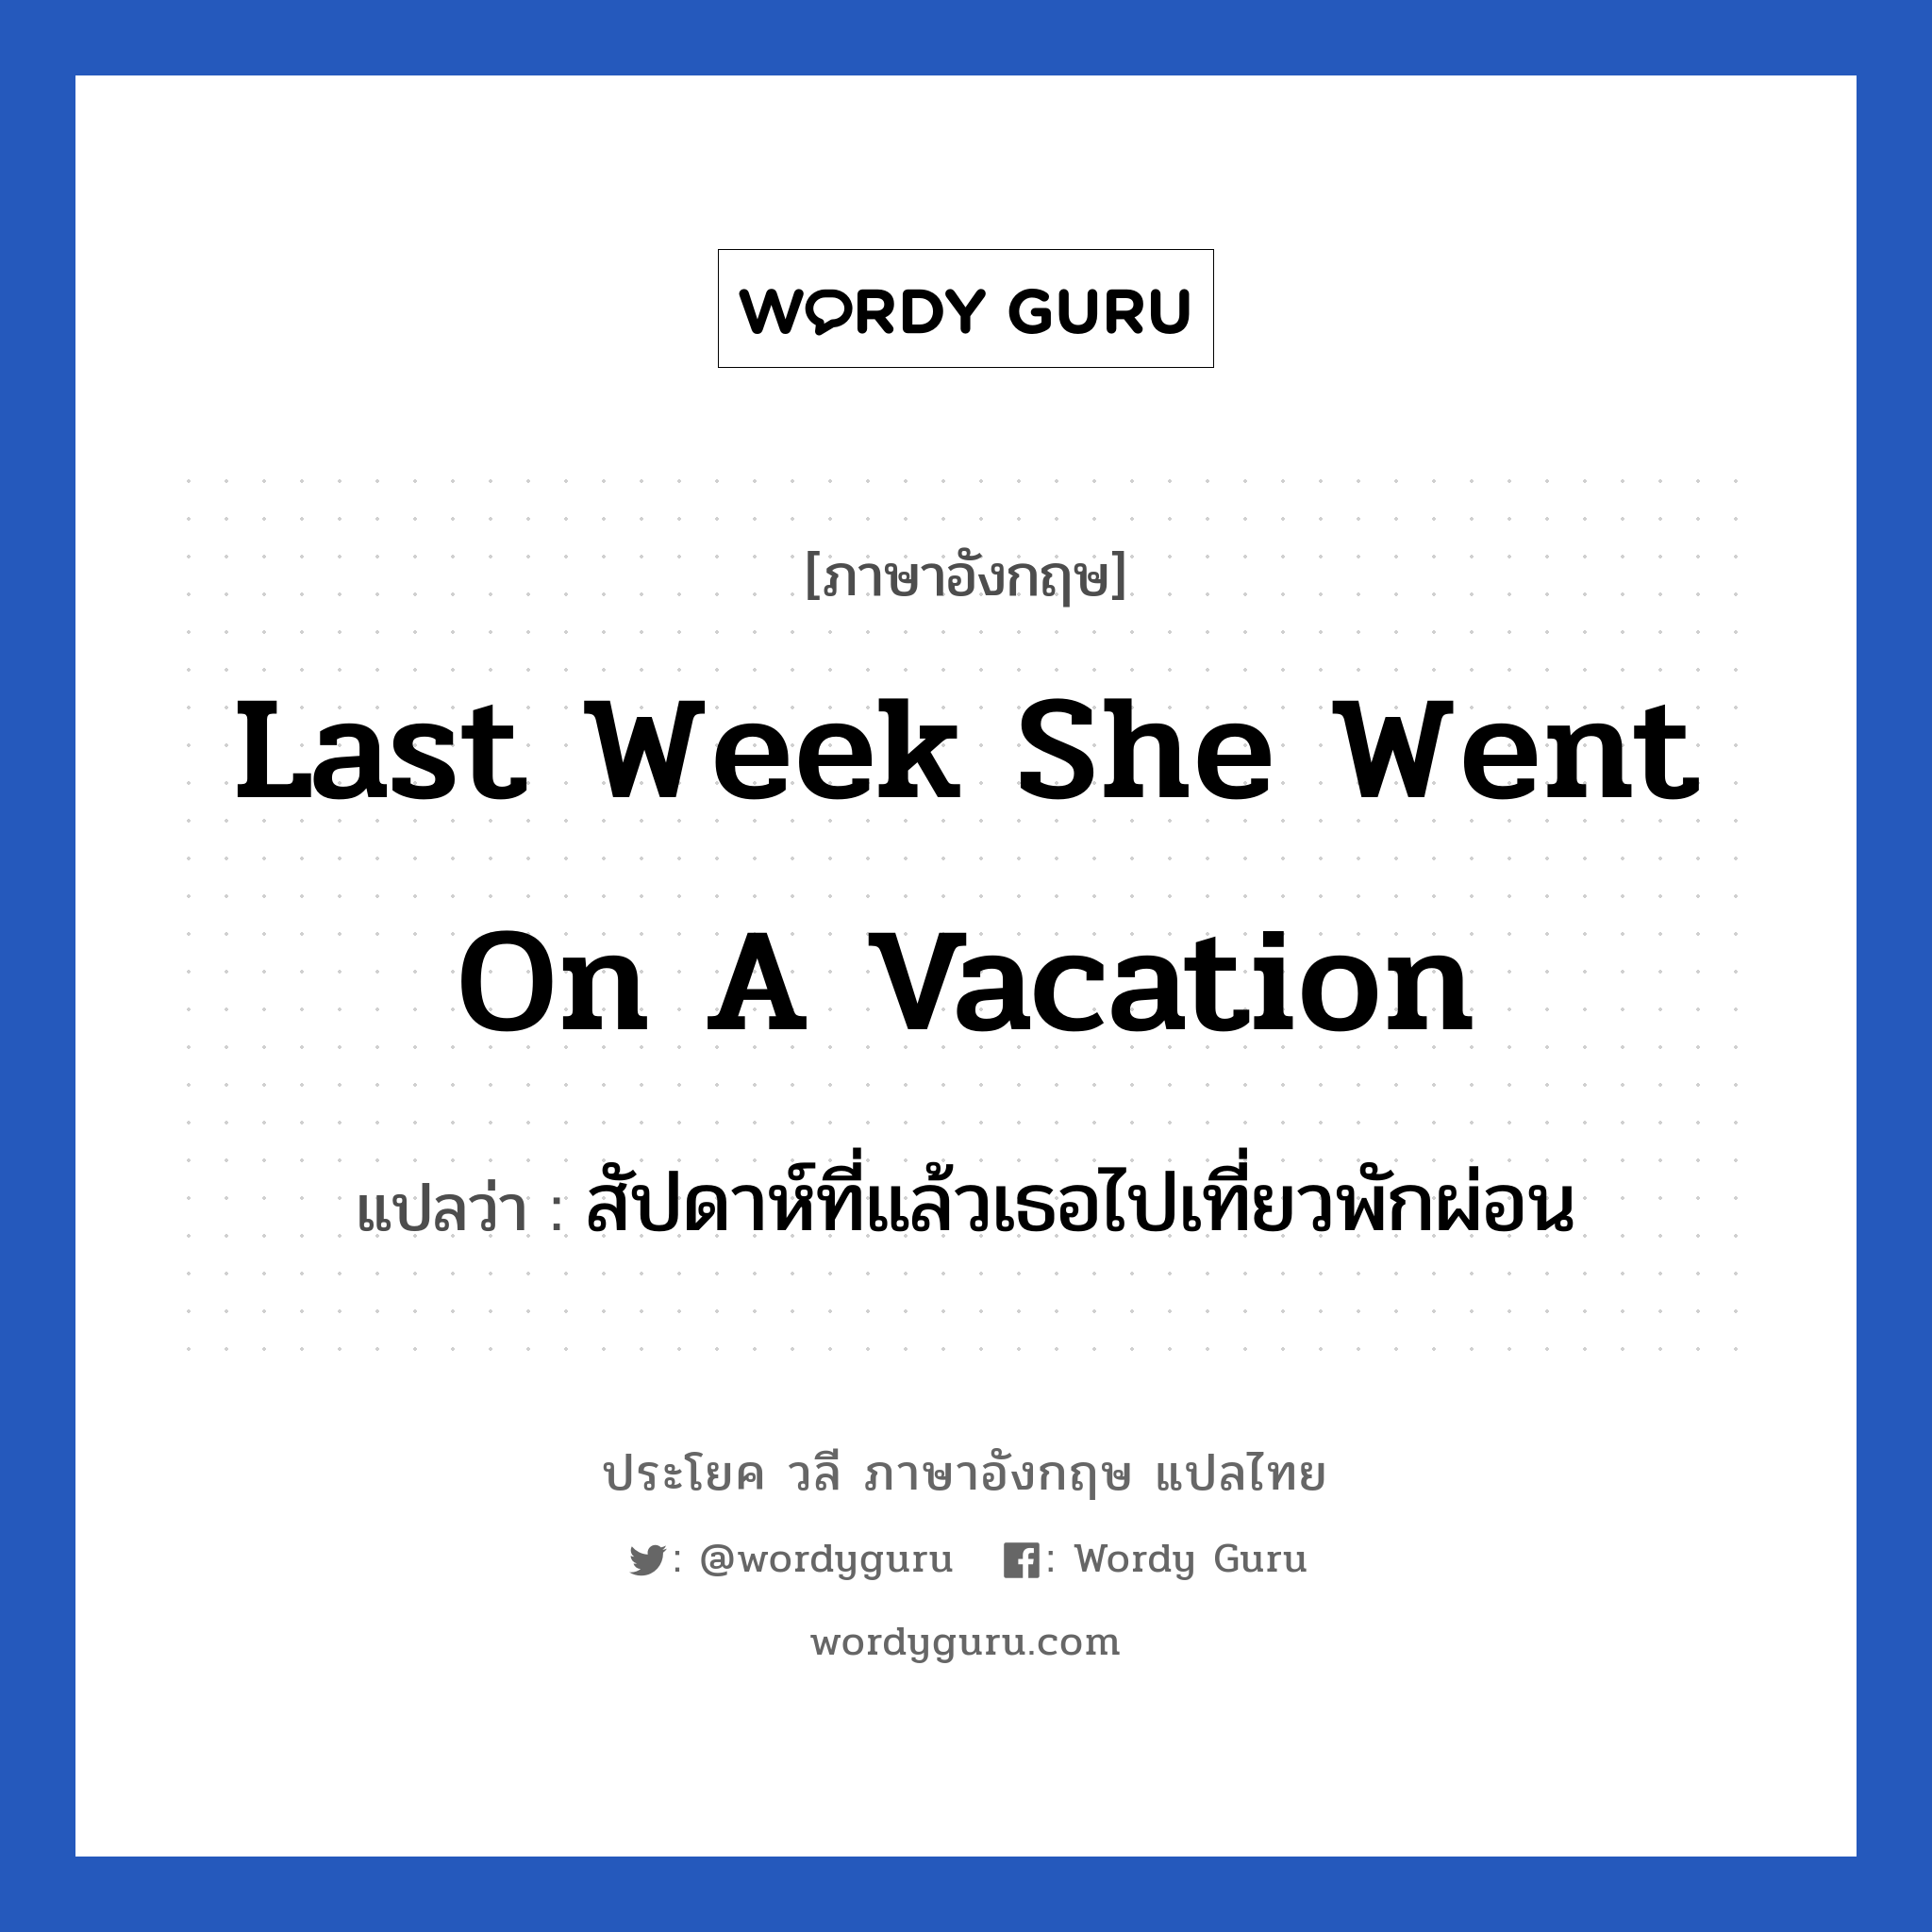 สัปดาห์ที่แล้วเธอไปเที่ยวพักผ่อน ภาษาอังกฤษ?, วลีภาษาอังกฤษ สัปดาห์ที่แล้วเธอไปเที่ยวพักผ่อน แปลว่า Last week she went on a vacation